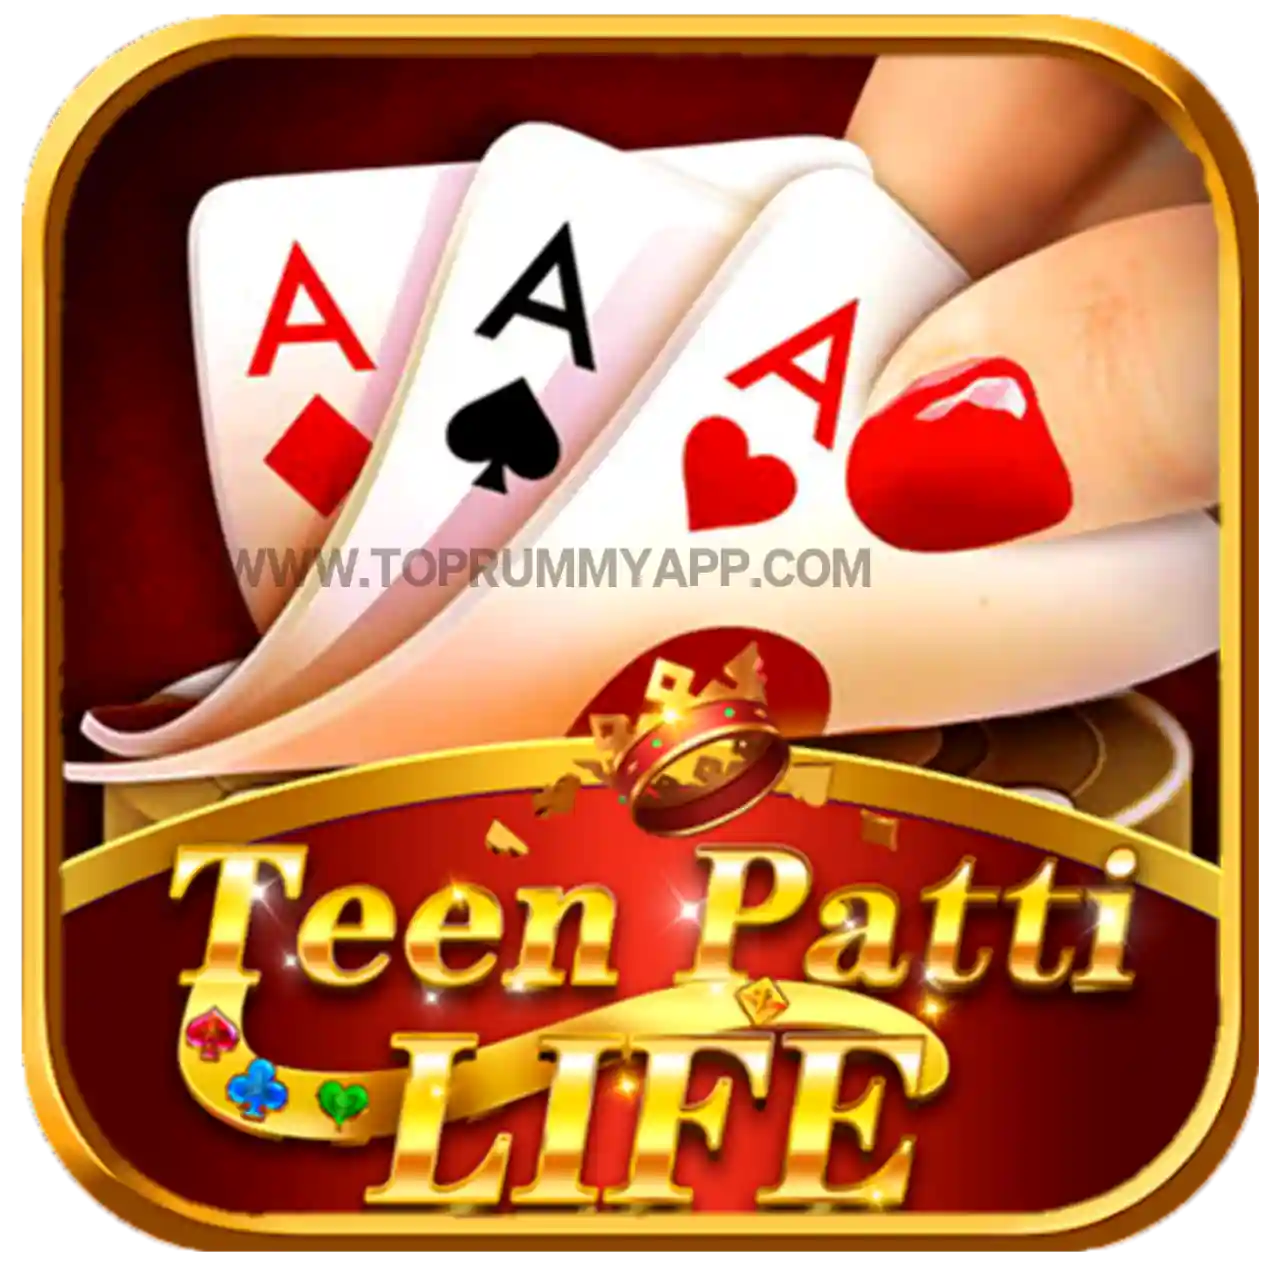 Teen Patti Life Apk Download - Top 20 Teen Patti App List